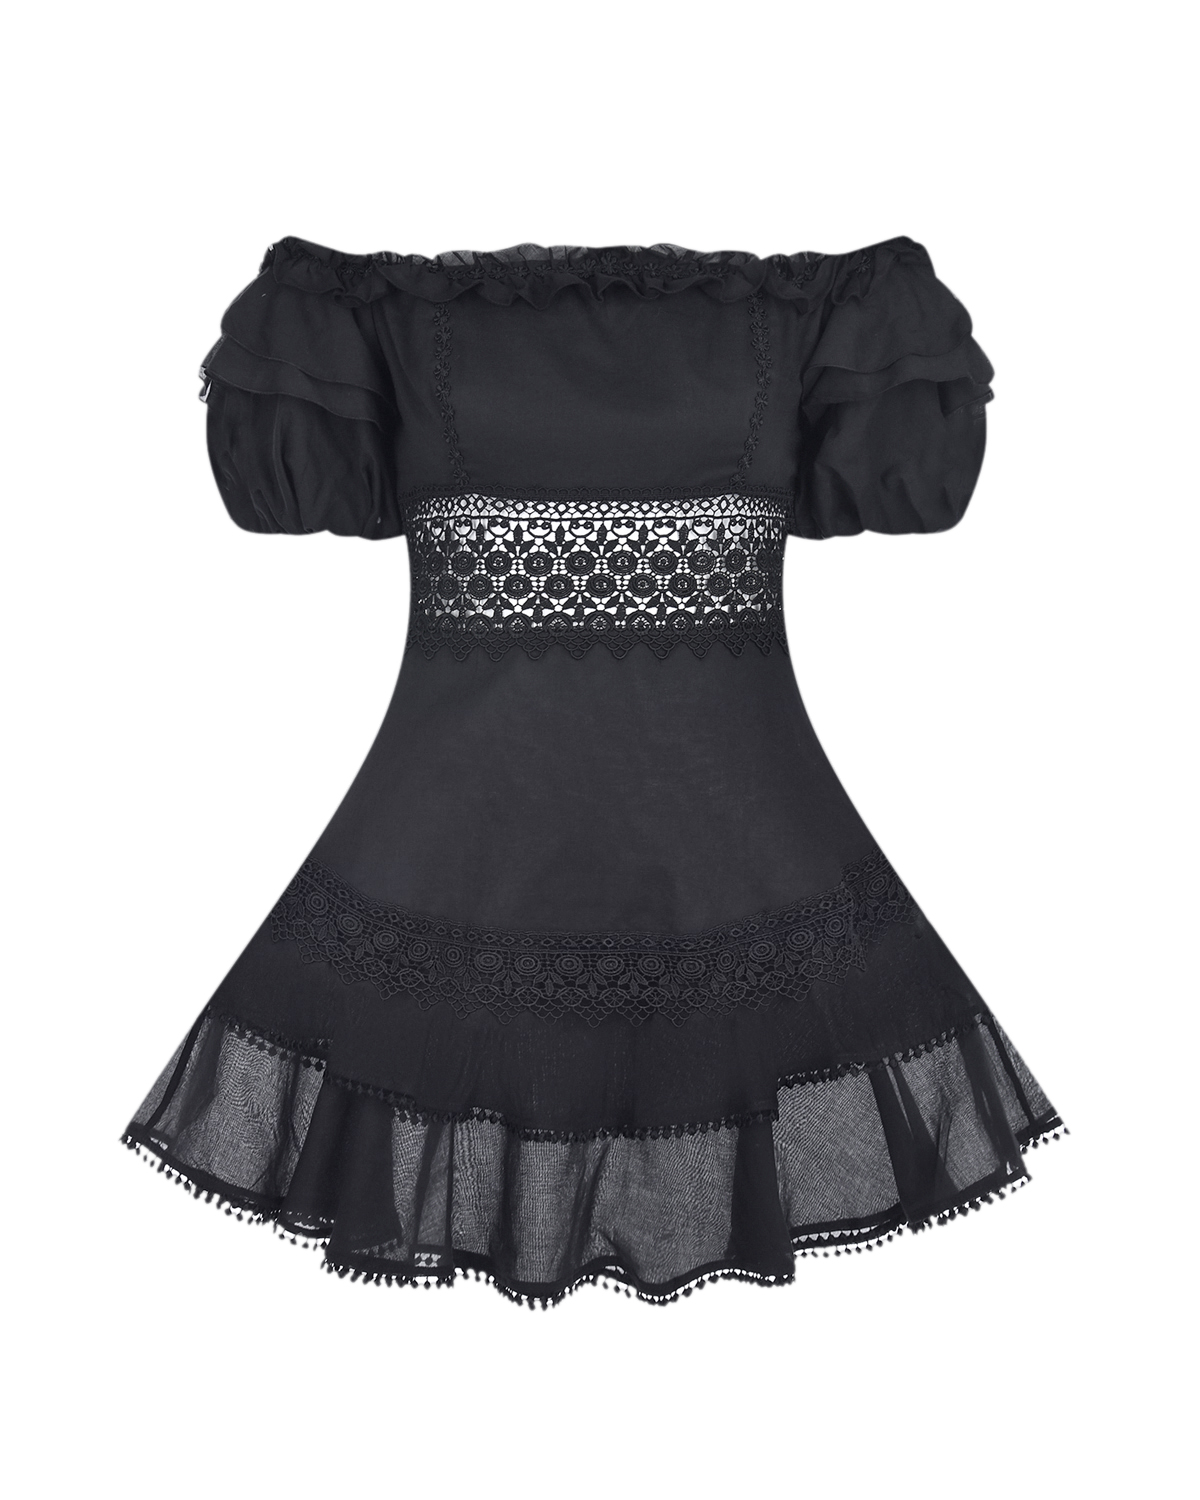 Черное платье-мини MARAL Charo Ruiz, размер 44, цвет черный - фото 1